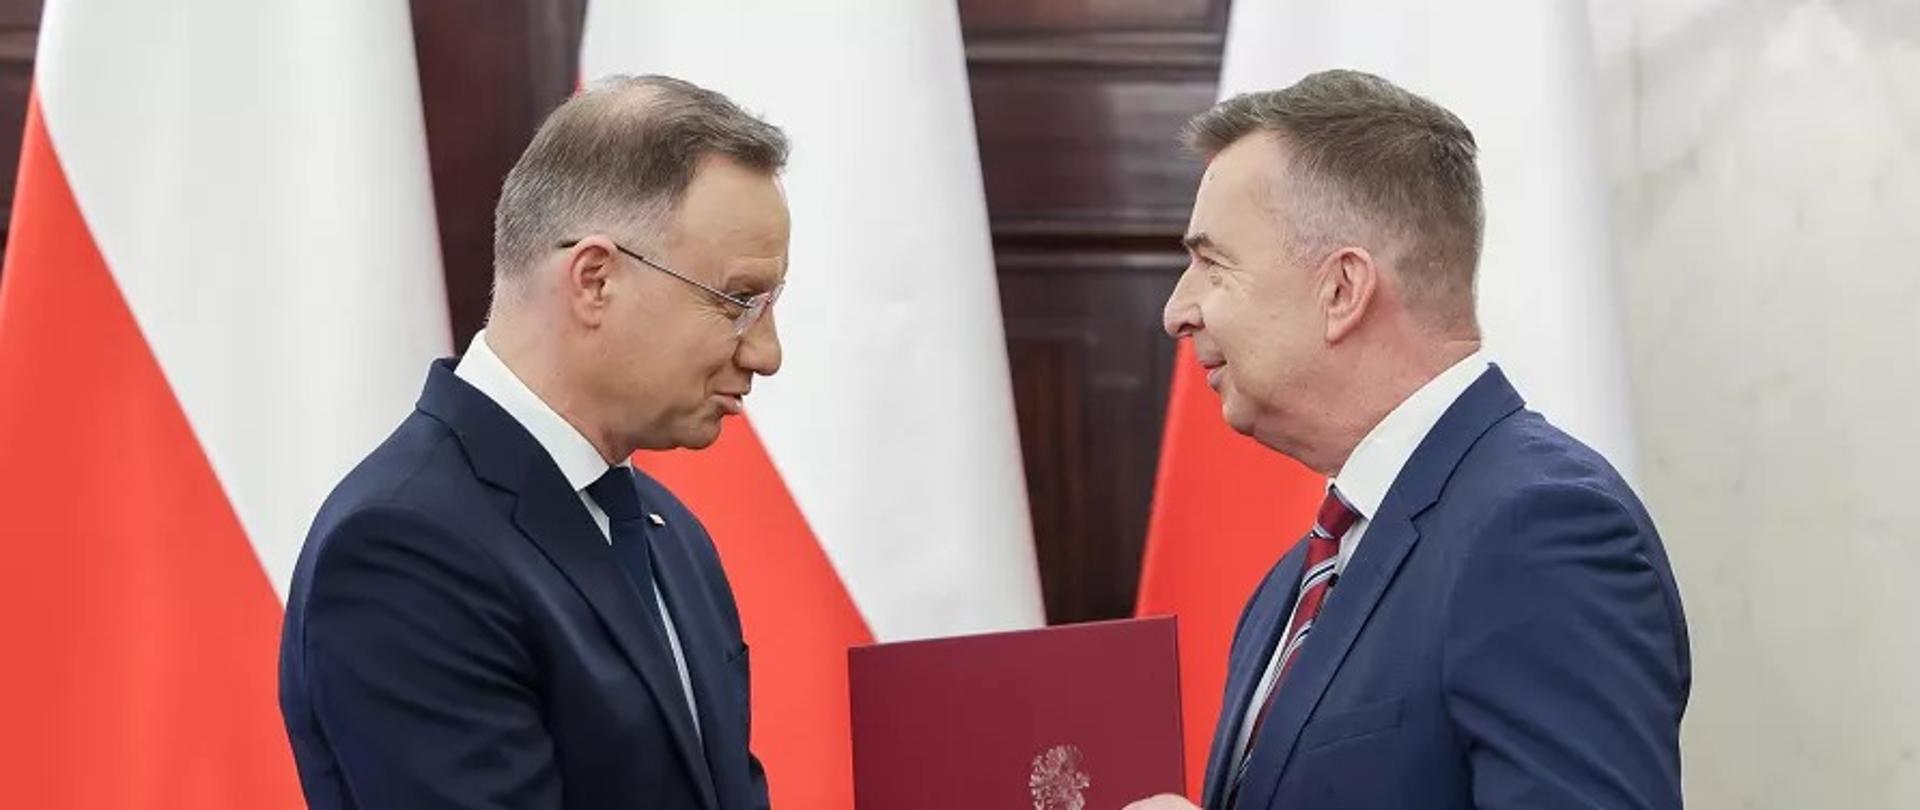 Minister Wieczorek stoi naprzeciwko prezydenta Dudy, podają sobie ręce, za nimi polskie flagi.